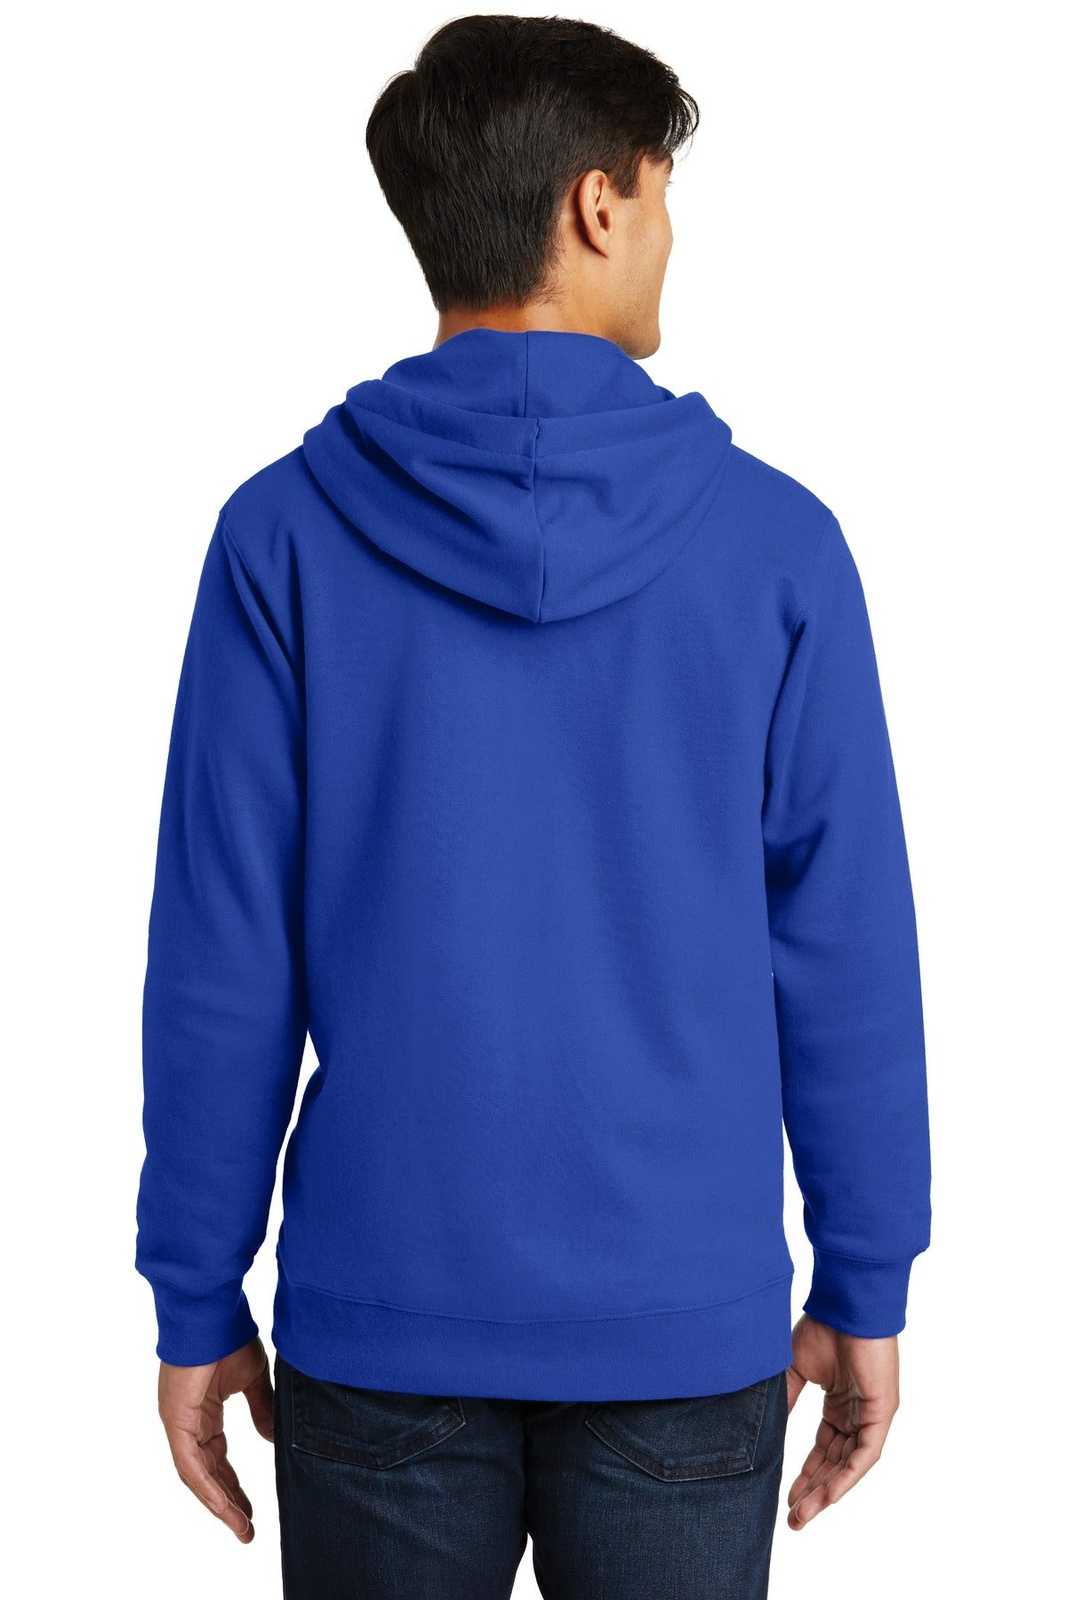 Port &amp; Company PC850ZH Fan Favorite Fleece Full-Zip Hooded Sweatshirt - True Royal - HIT a Double - 2